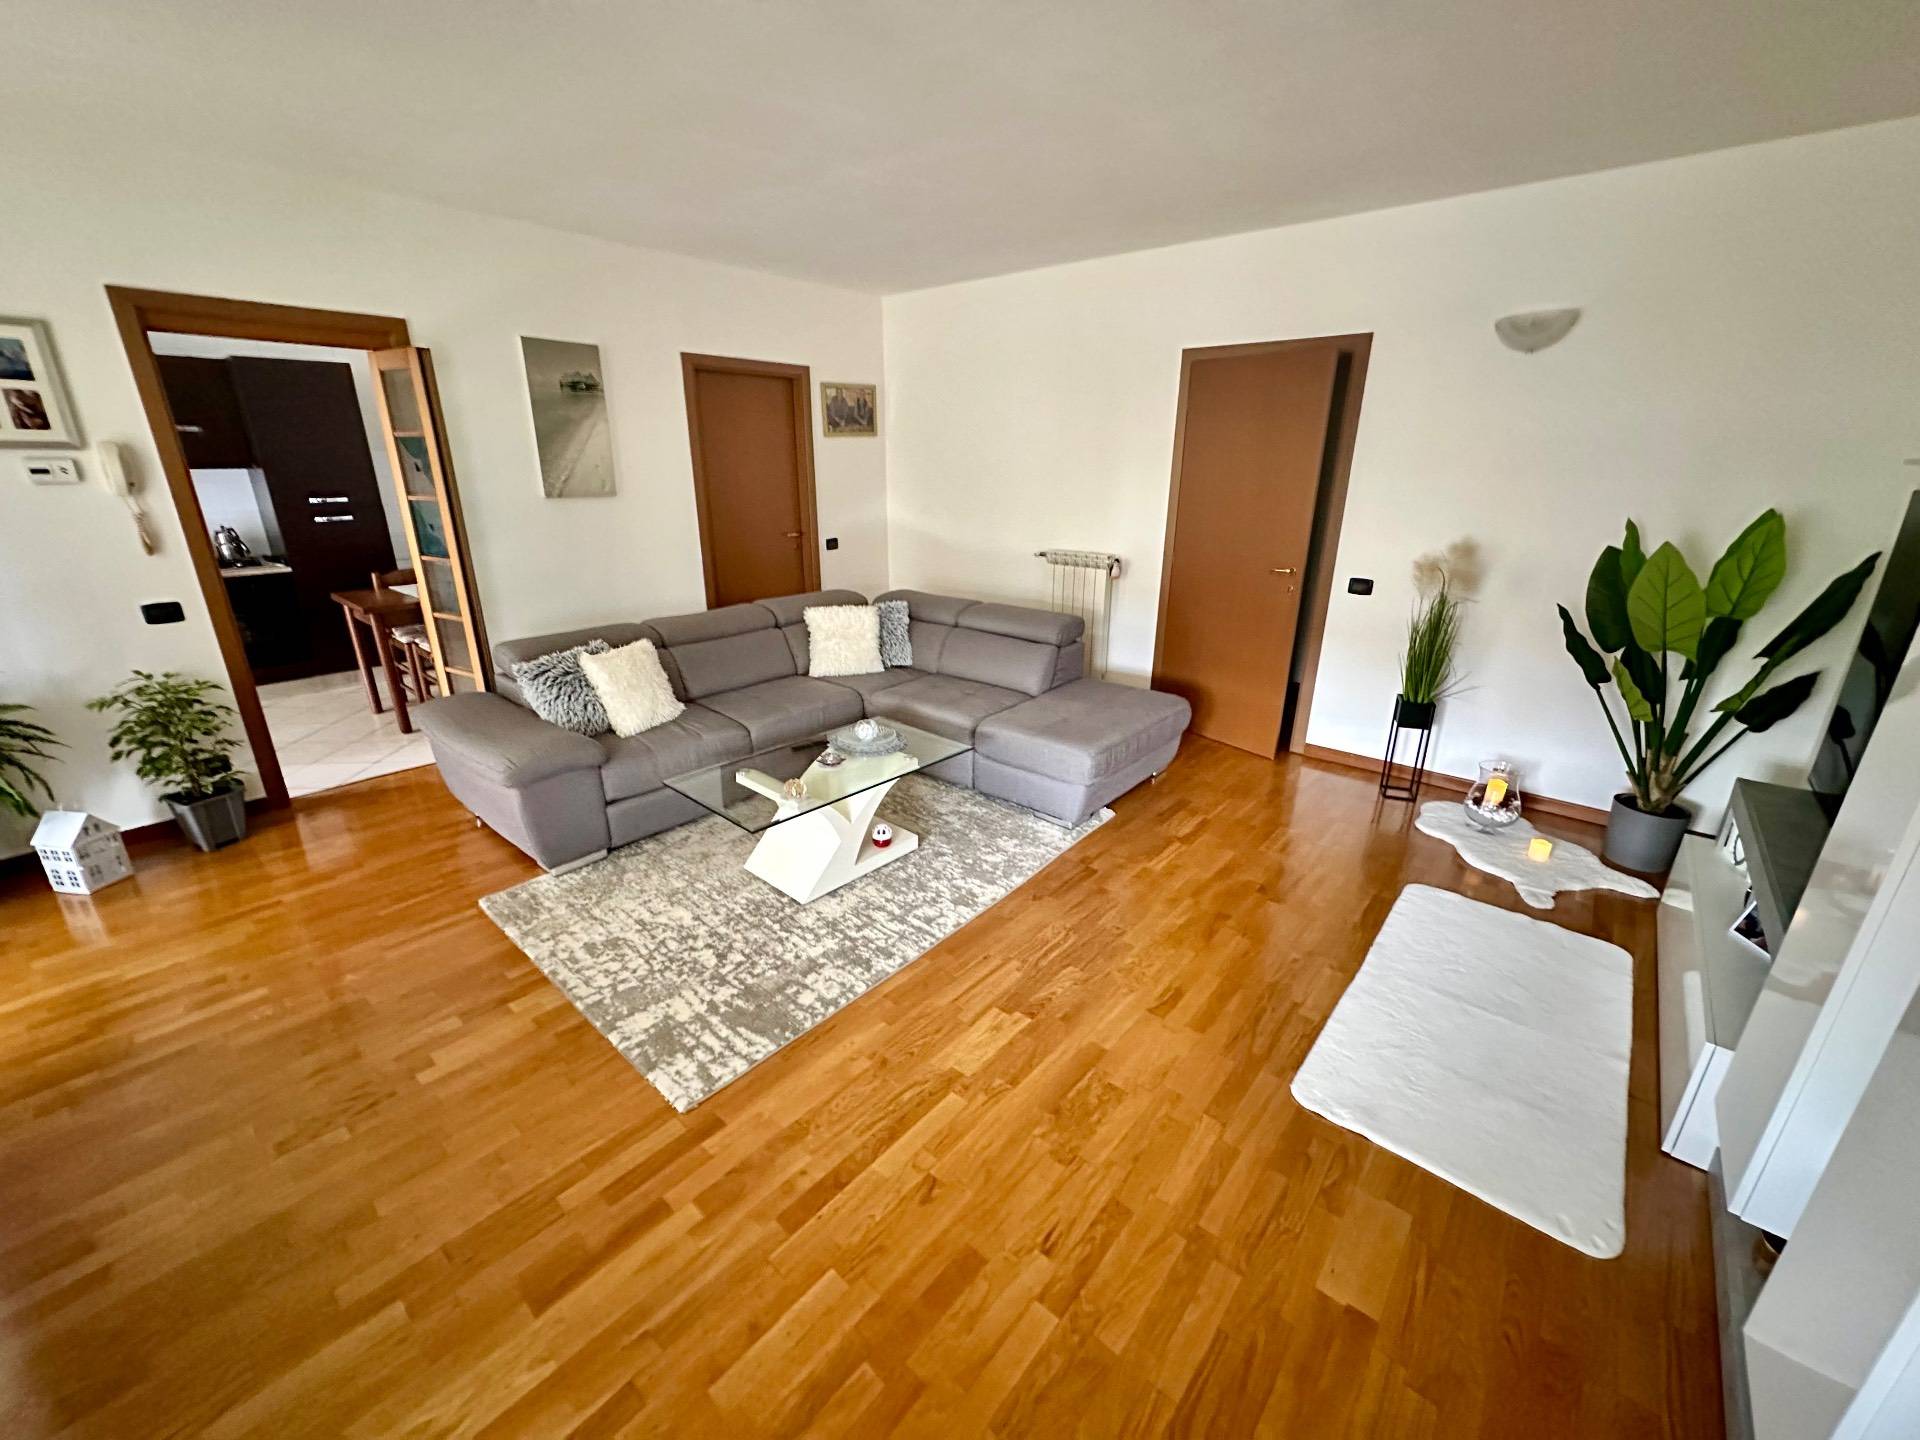 Appartamento in vendita a Coccaglio, 3 locali, prezzo € 180.000 | PortaleAgenzieImmobiliari.it